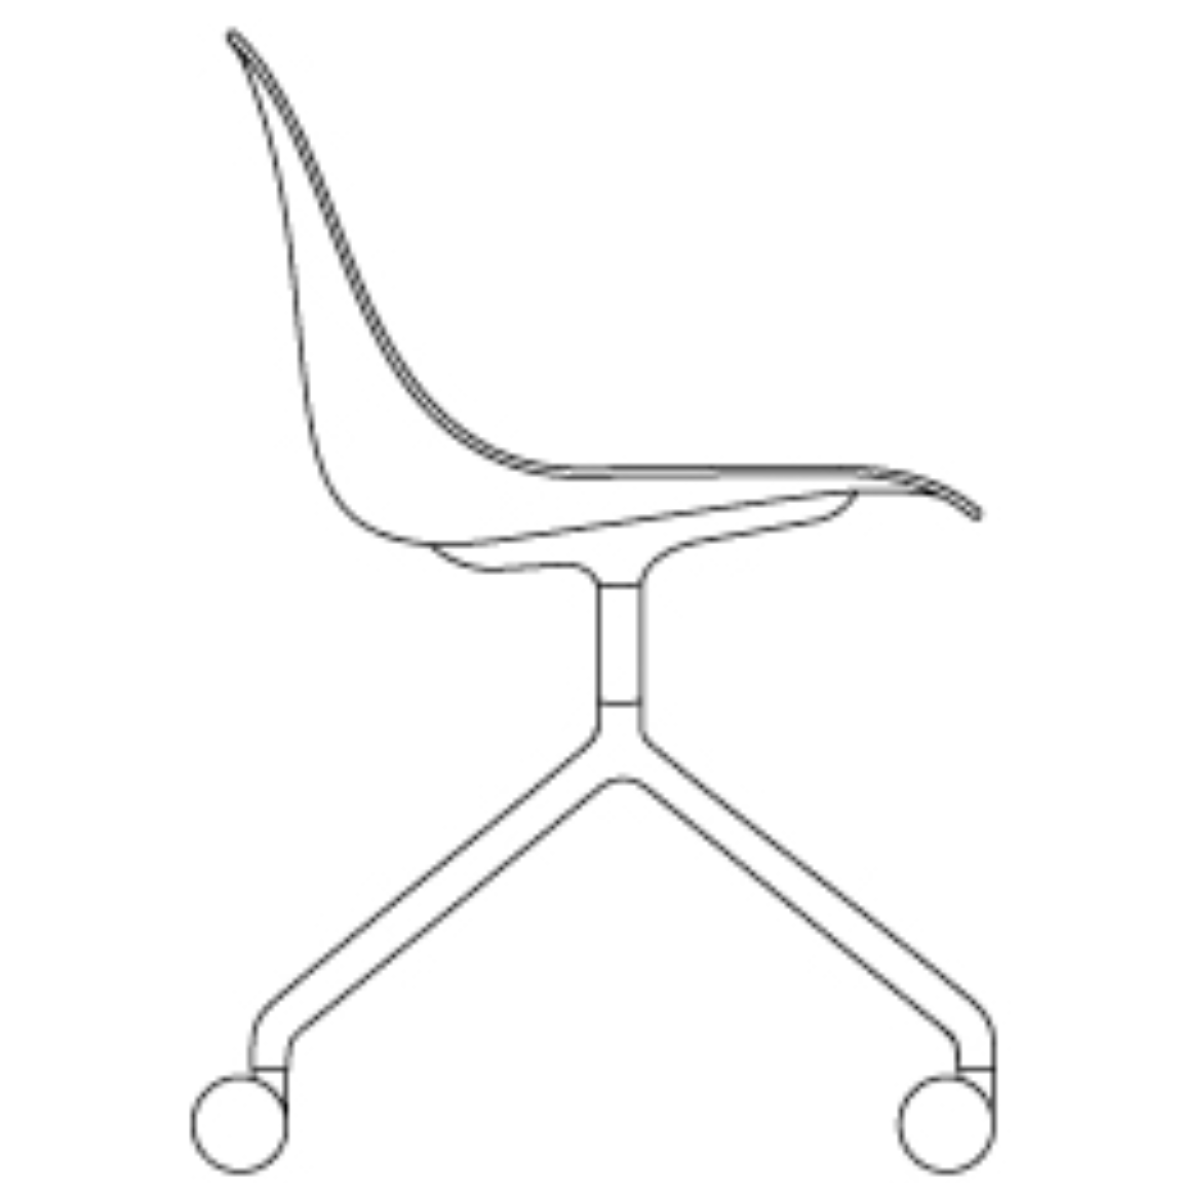 full upholstery - Fiber side chair - swivel base with castors